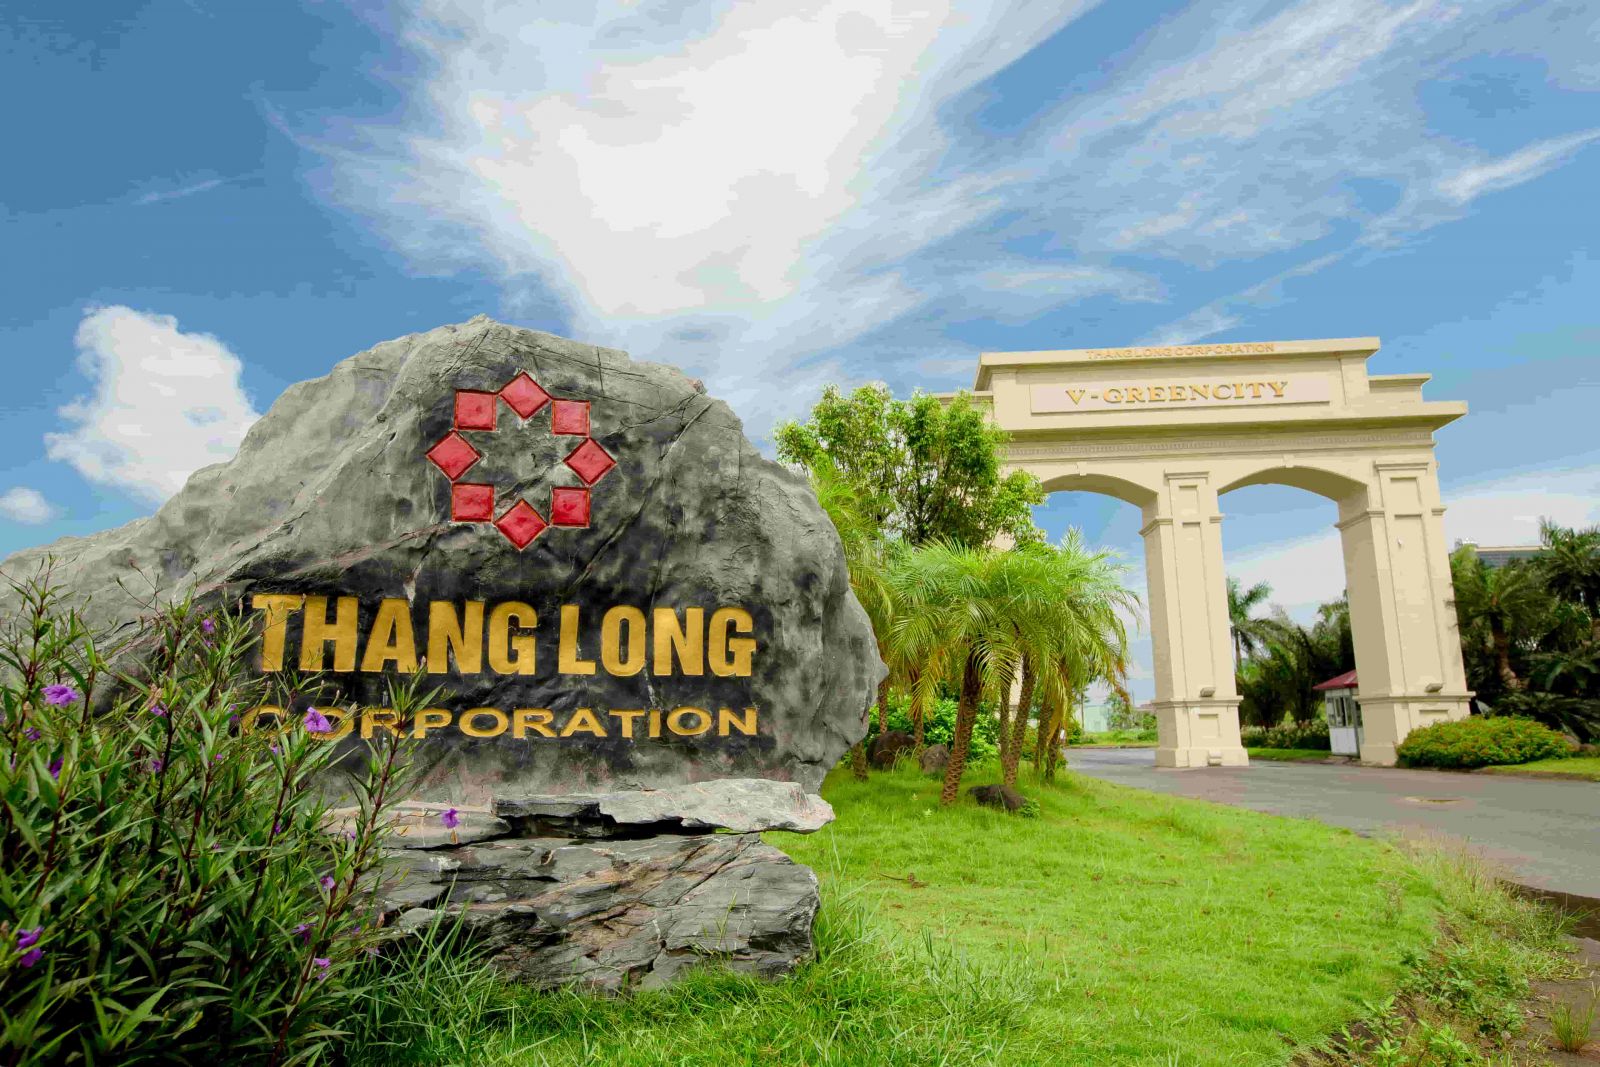 Dự án Khu đô thị V - Green City Phố Nối do Công ty Cổ phần Thăng Long làm chủ đầu tư có dấu hiệu sai phạm nghiêm trọng nhưng tỉnh Hưng Yên không công khai kết luận thanh tra.